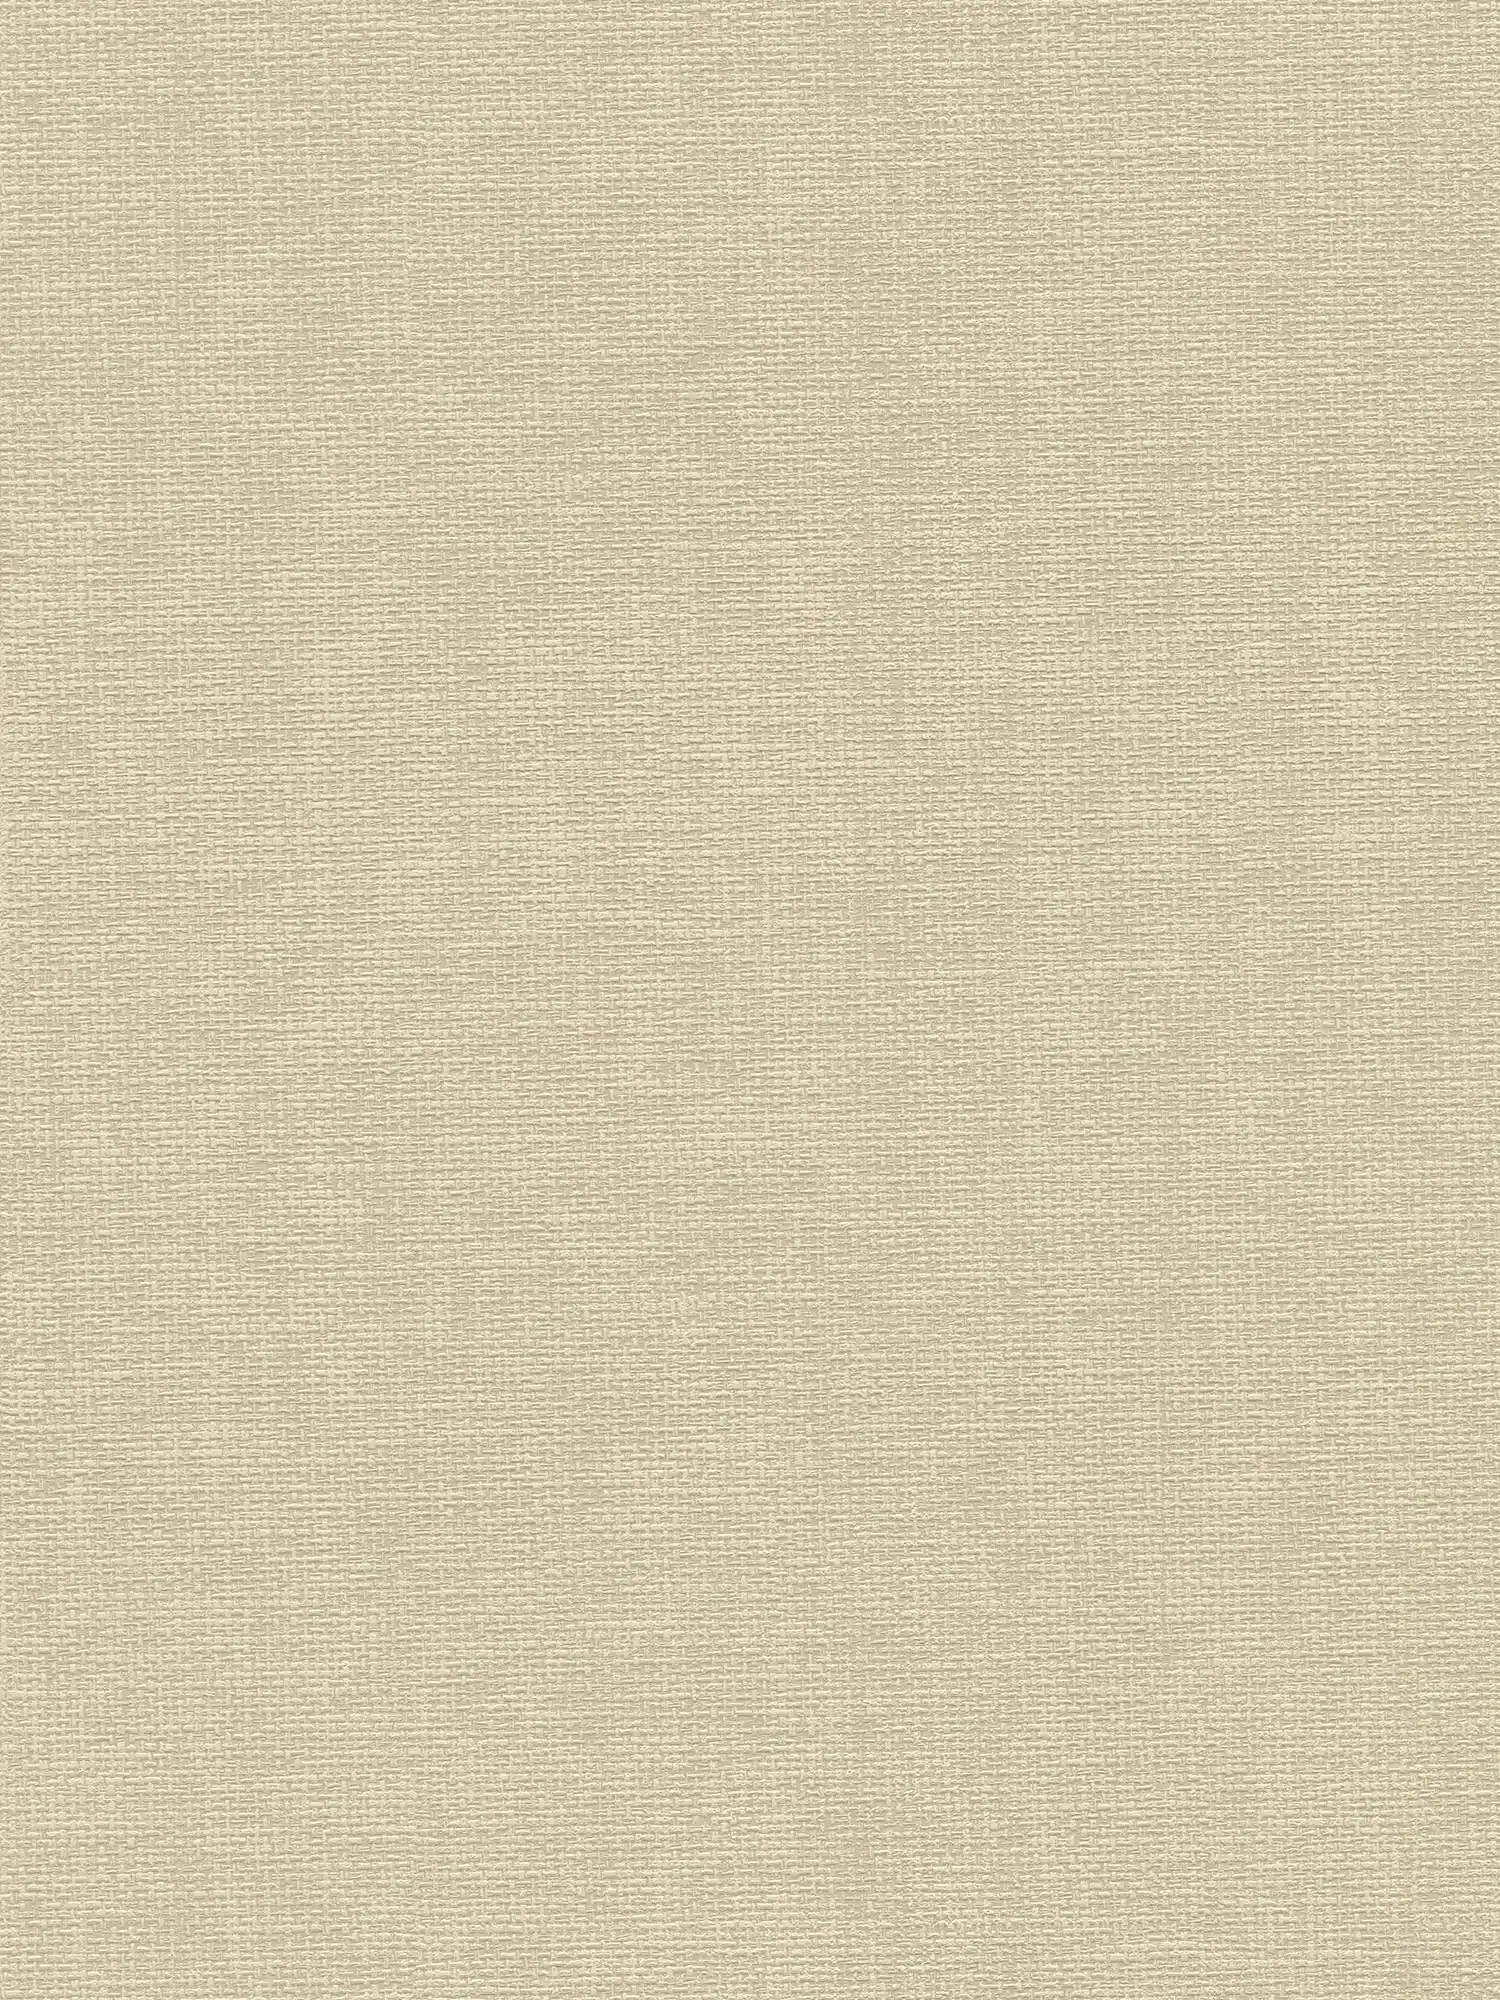 Carta da parati con struttura in tessuto - beige, grigio
